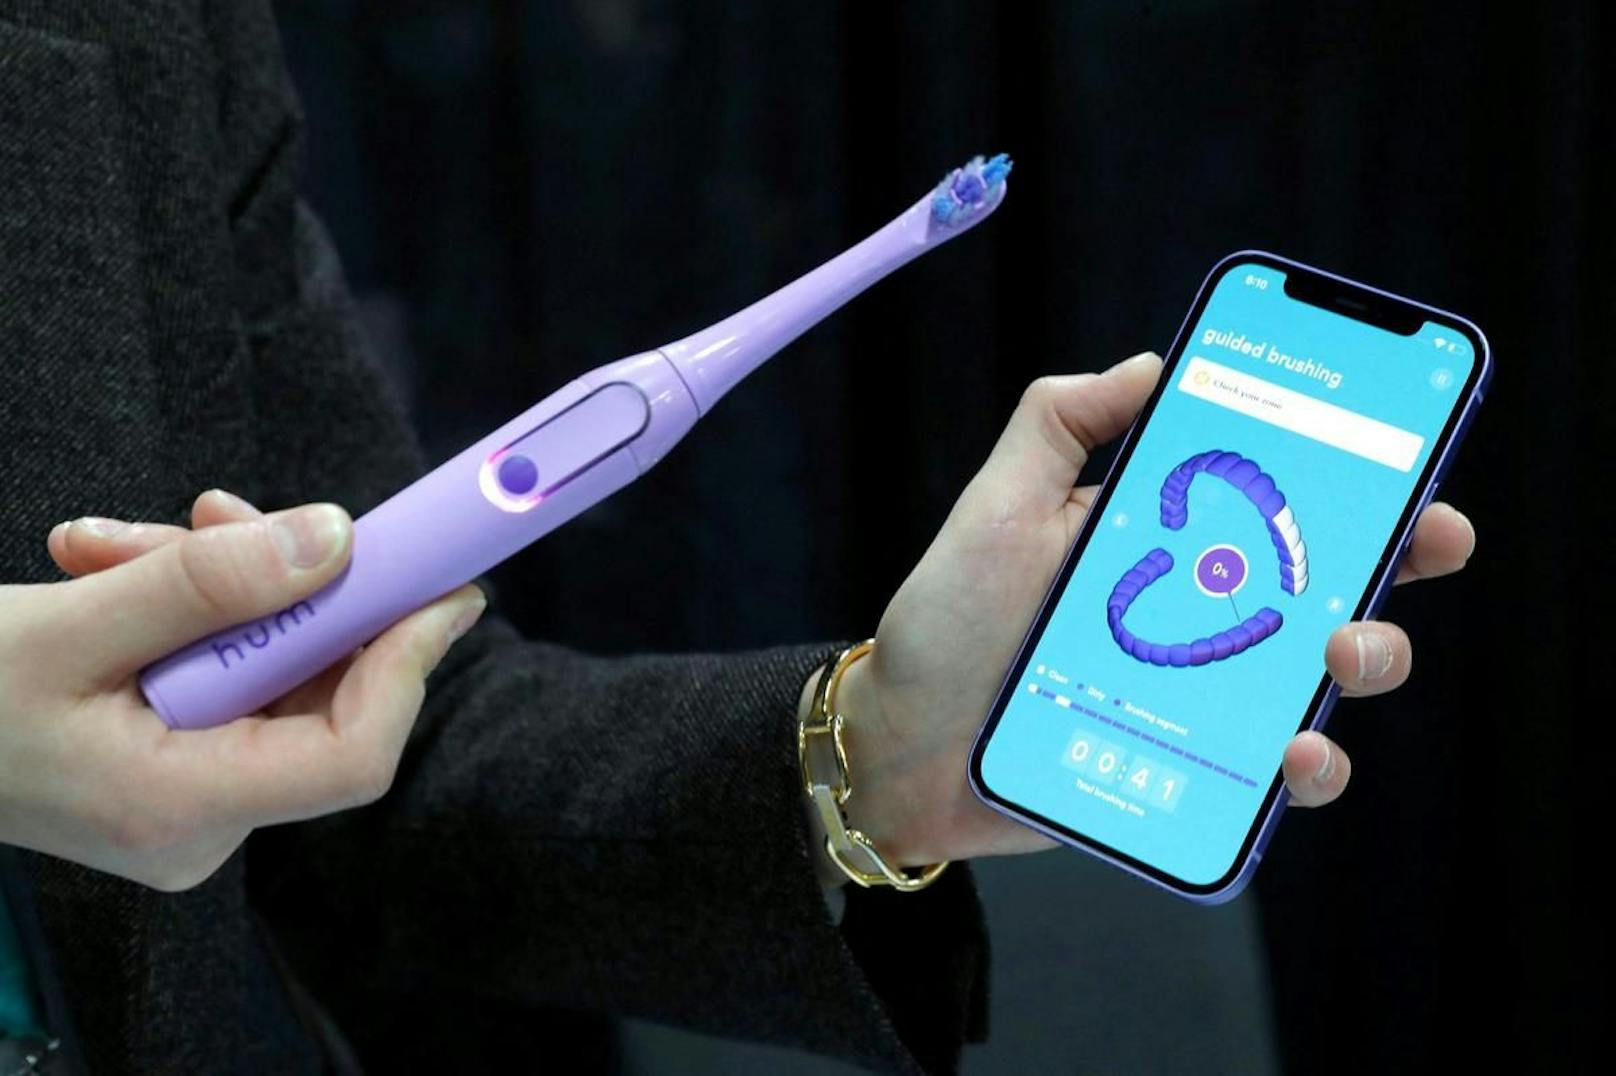 Zur Zahnpflege gibt es auch diese Hum Toothbrush. Mit einer App zeigt sie genau an, wo man noch besser putzen sollte.